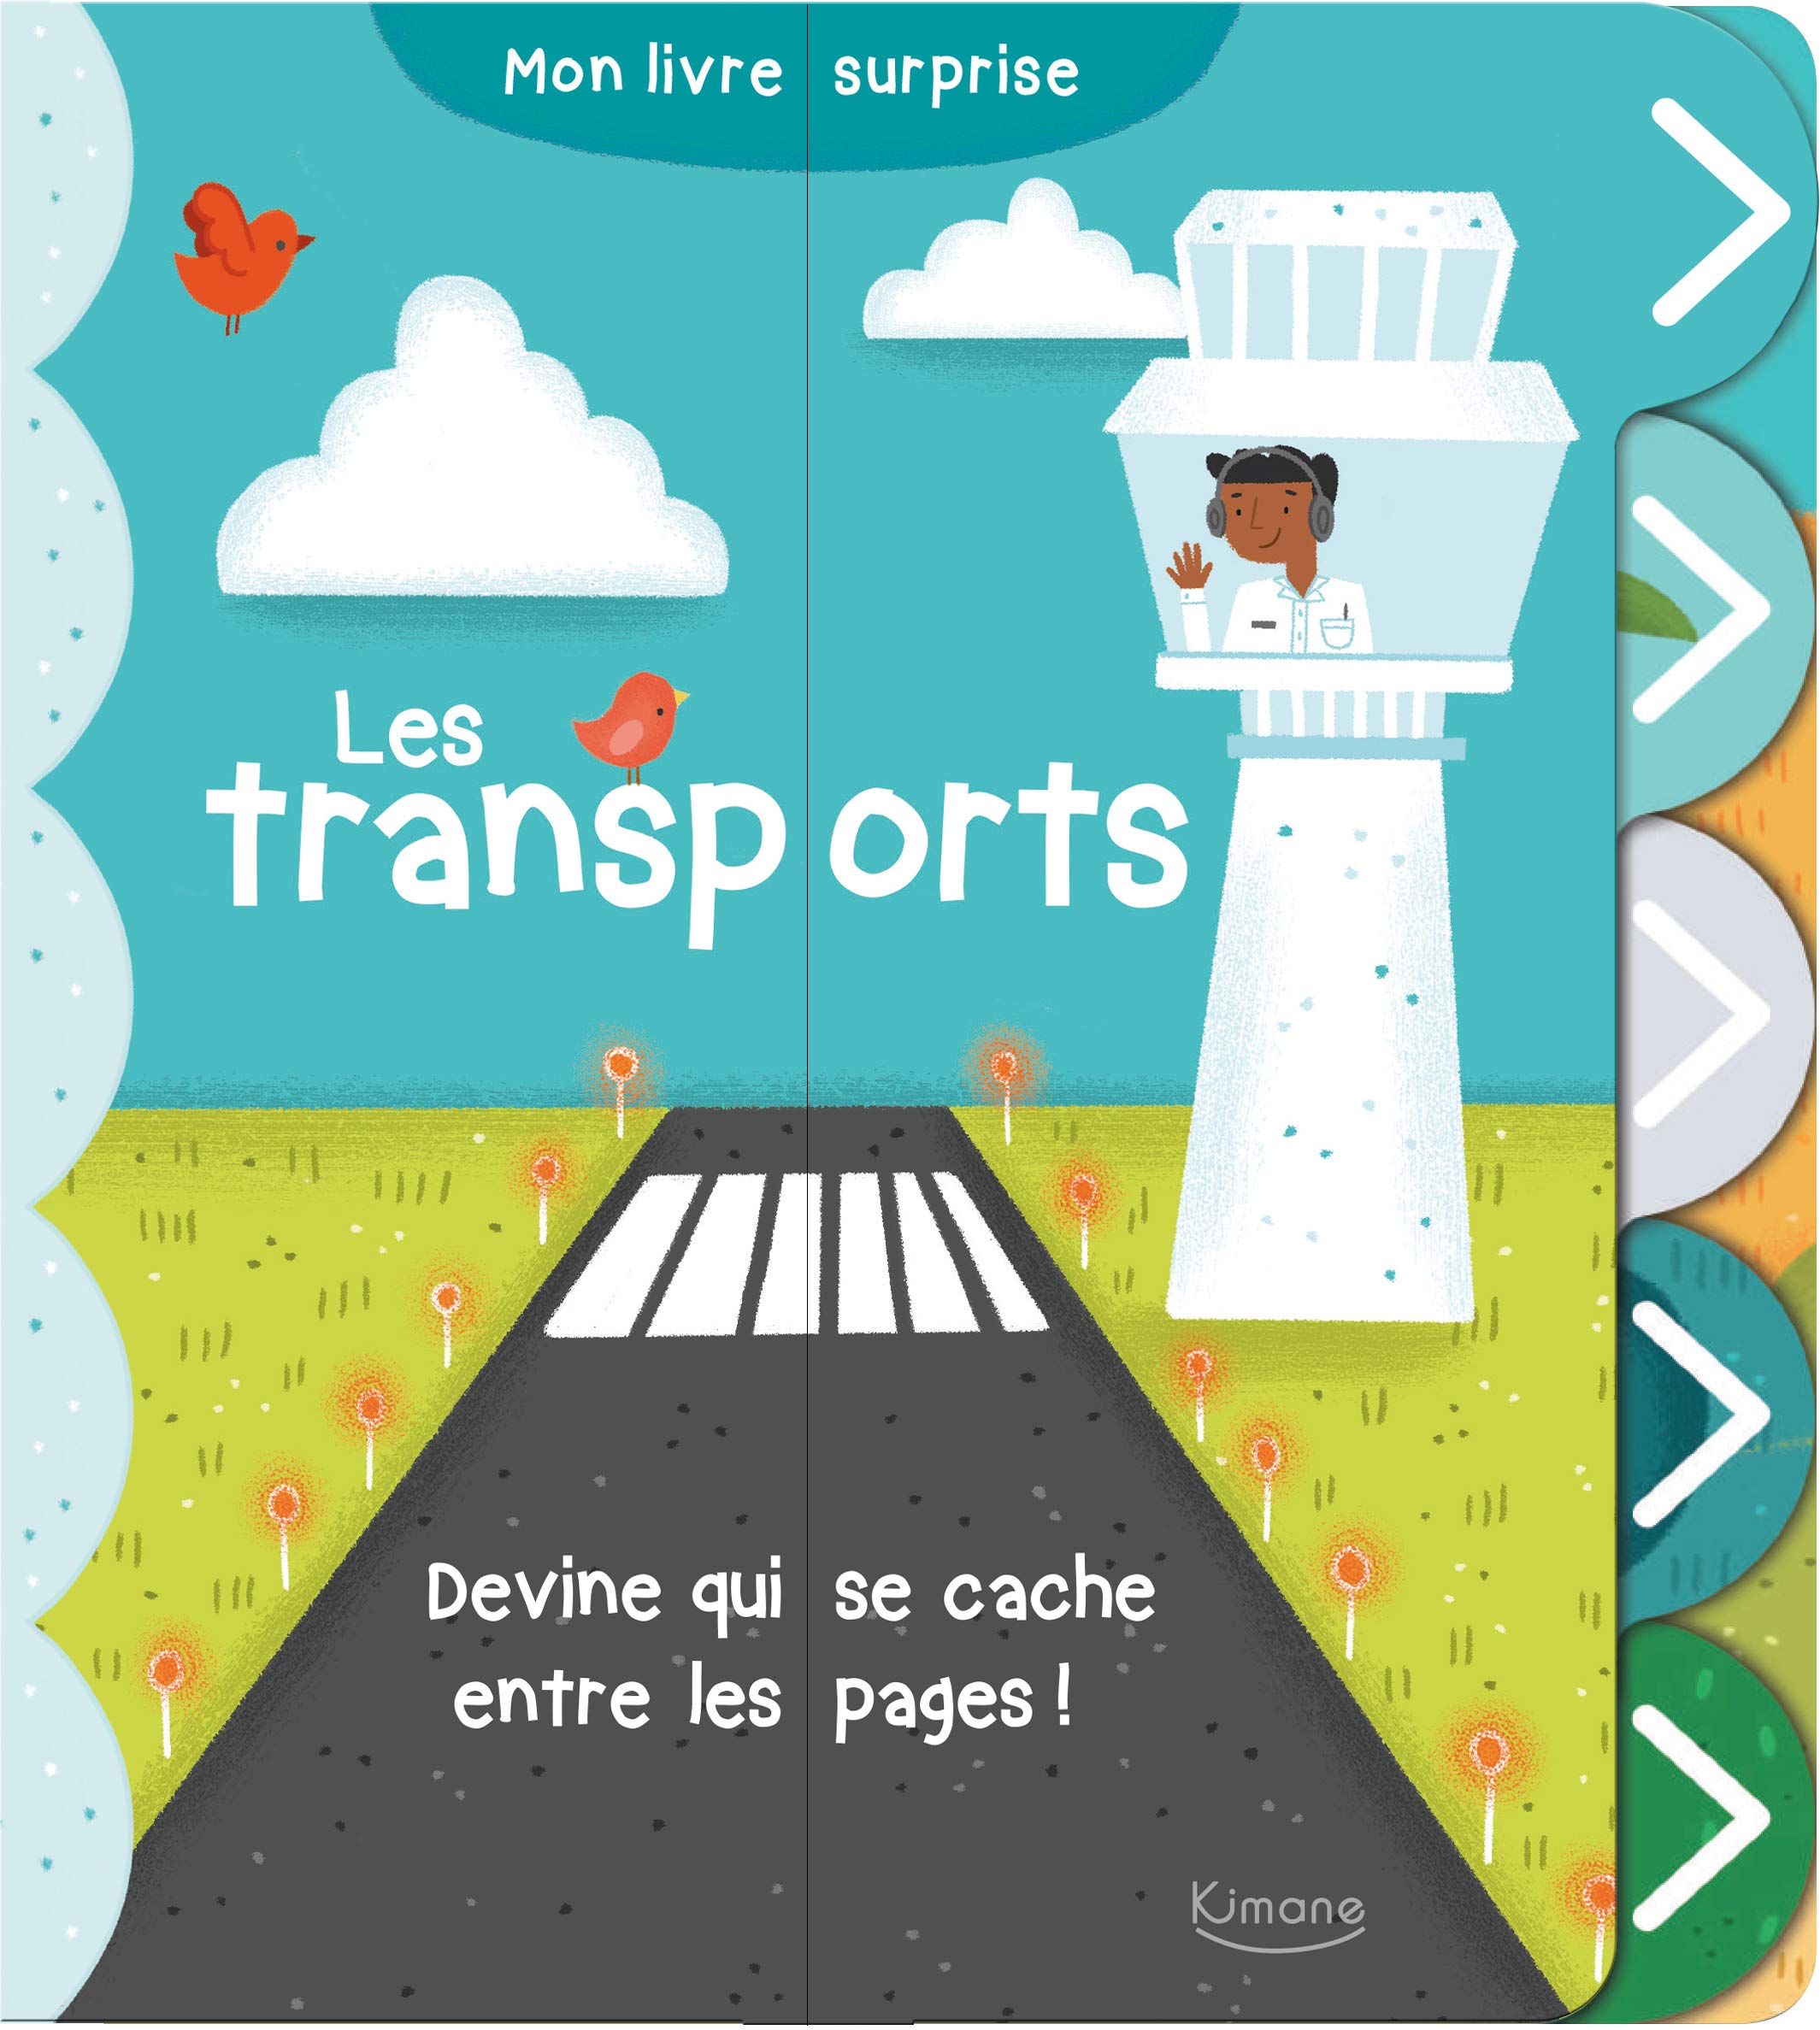 mon_livre-surprise_les_transports